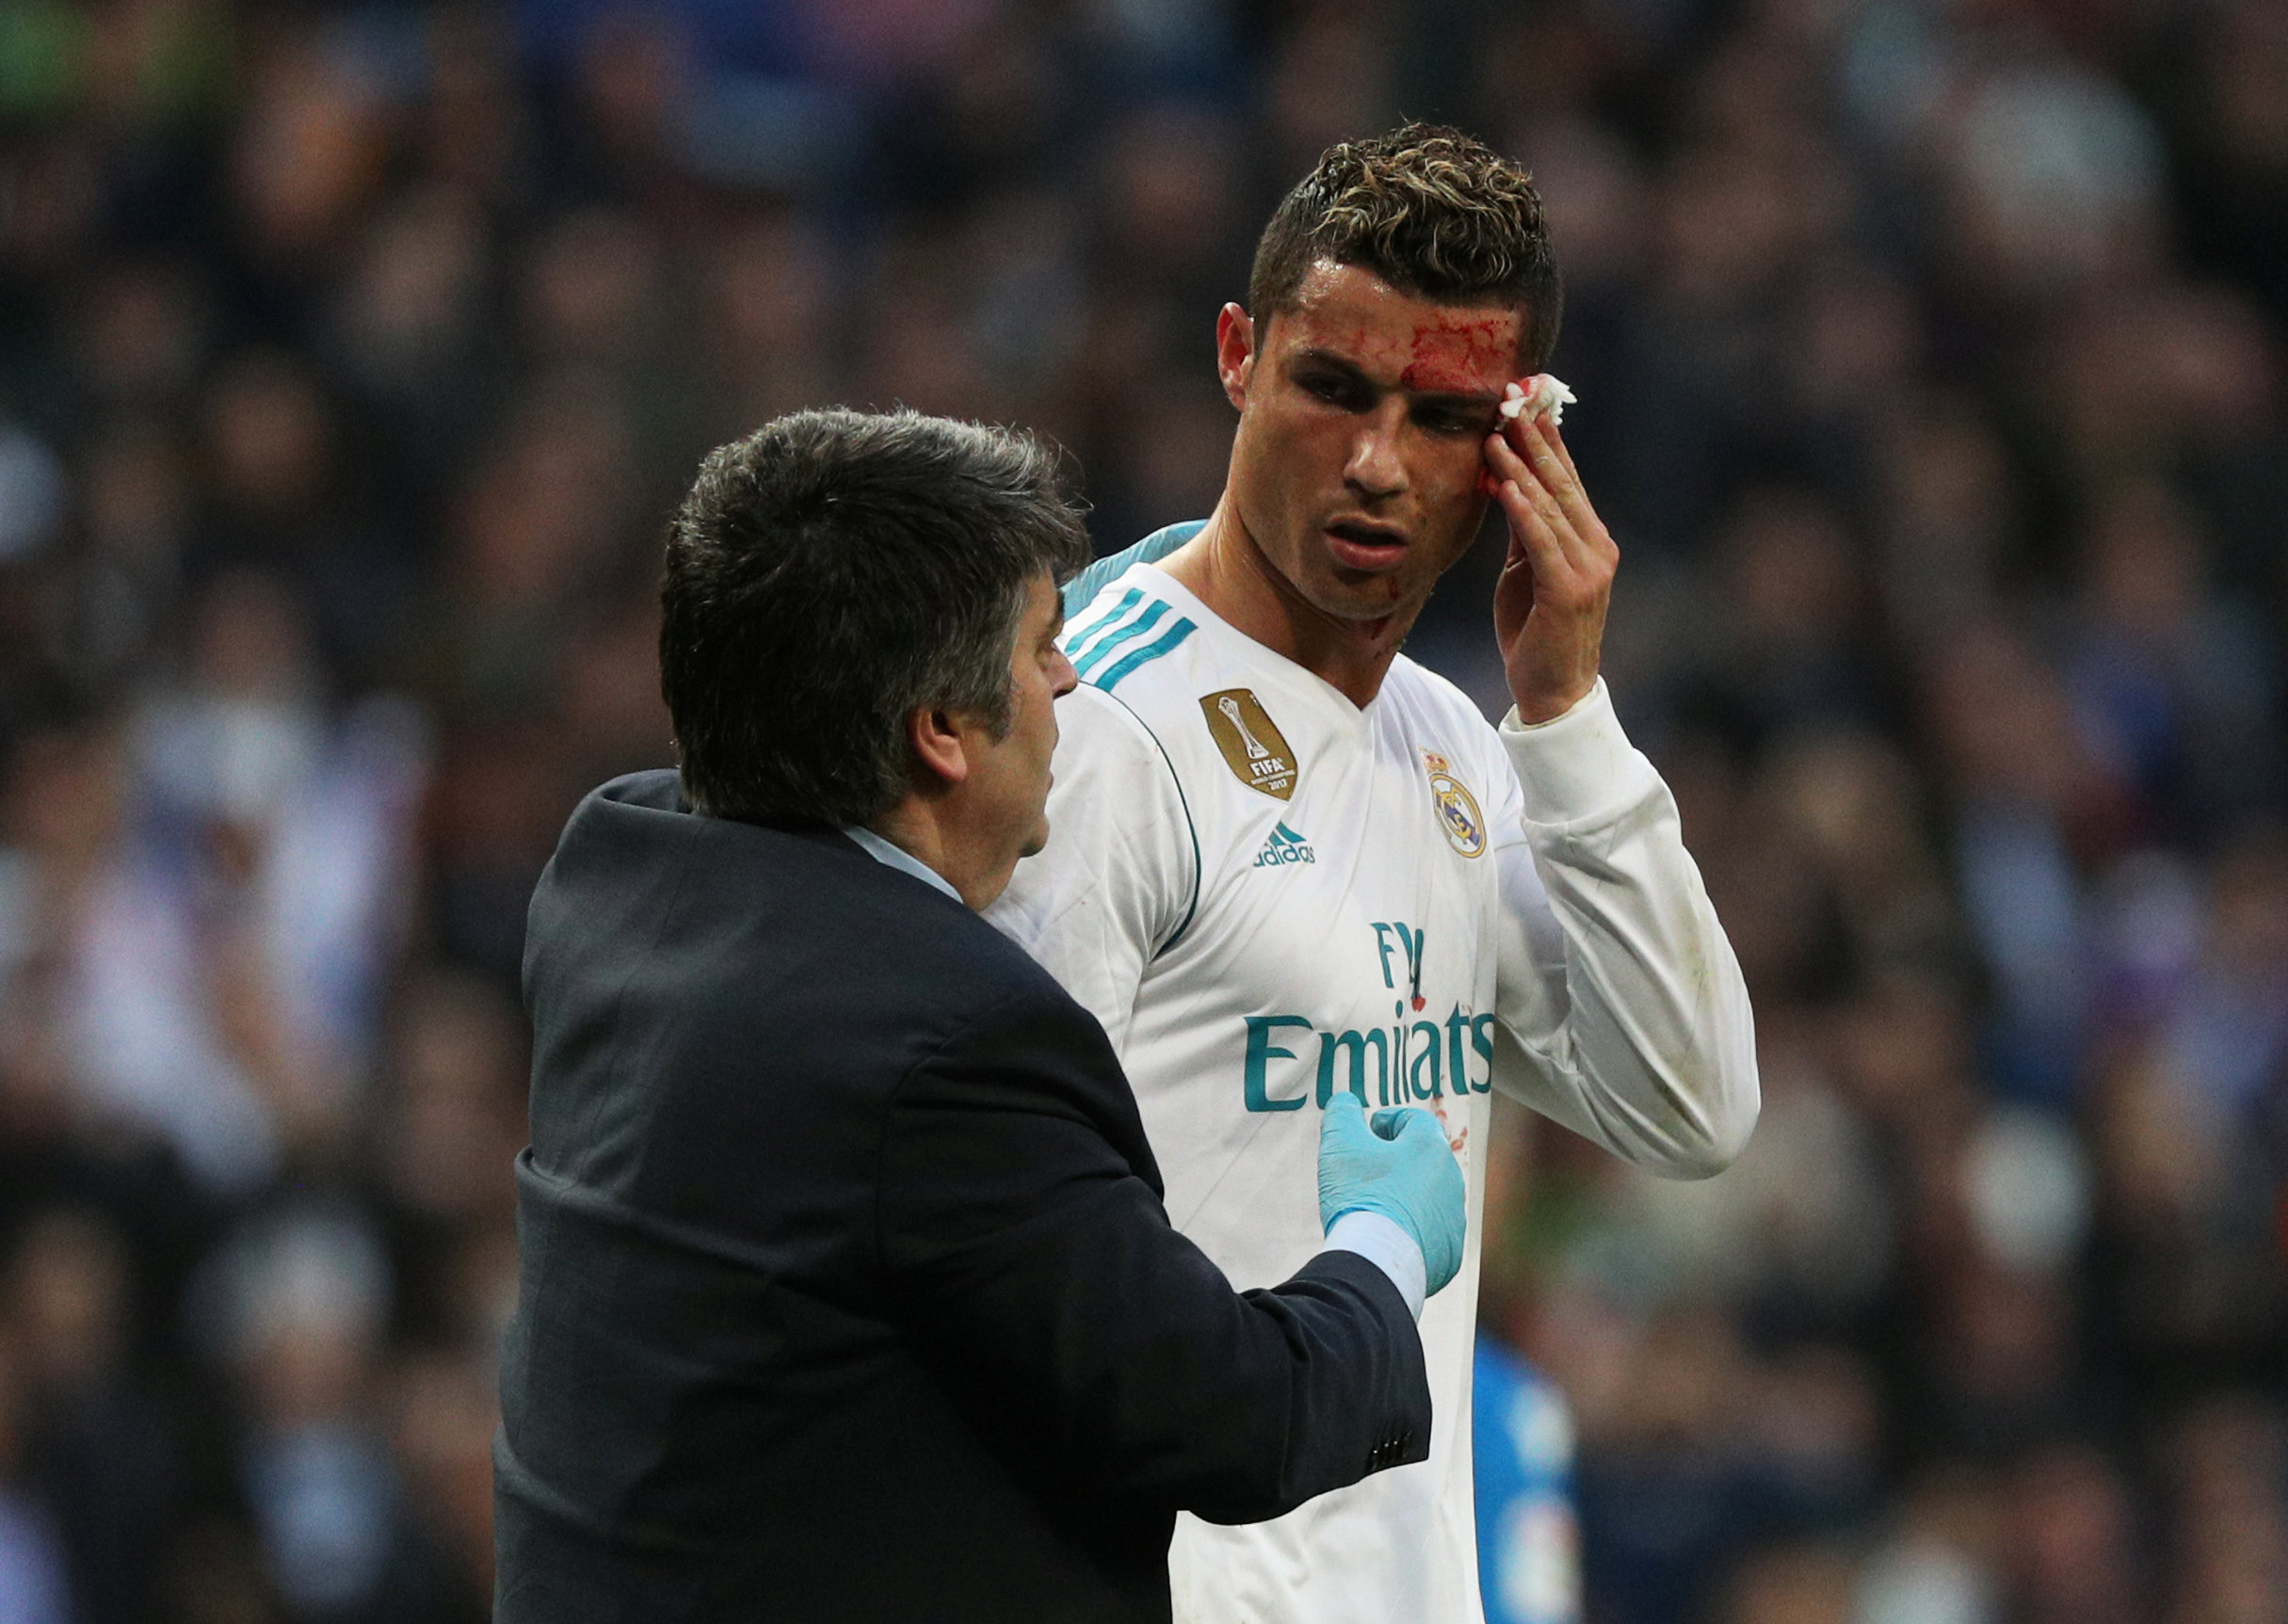 Football: Ronaldo 'still handsome' after face injury